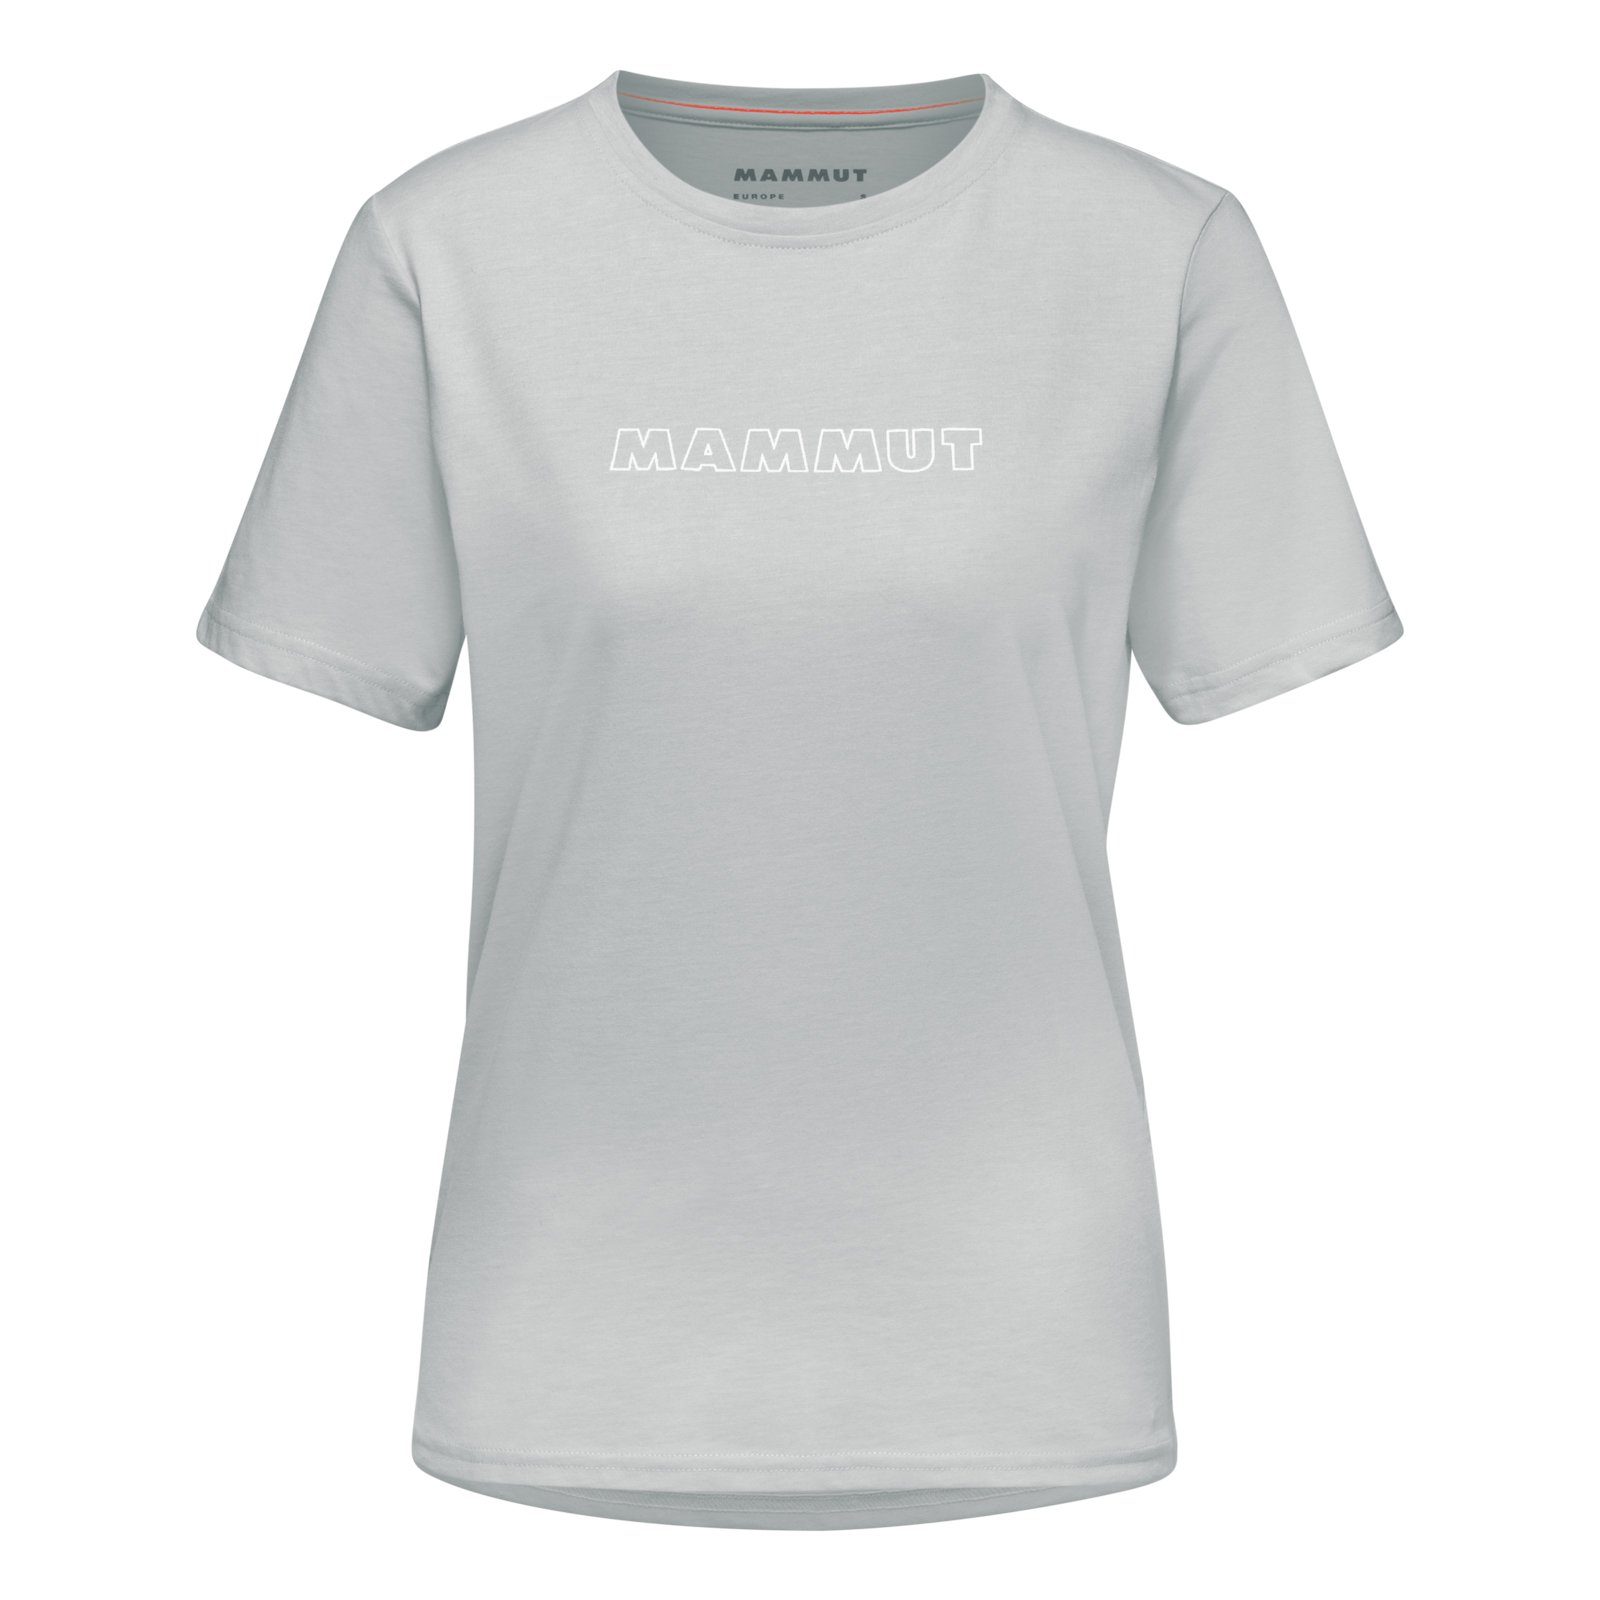 Mammut highway T-Shirt Logo Markenschriftzug 0401 mit melange T-Shirt großem Mammut Core